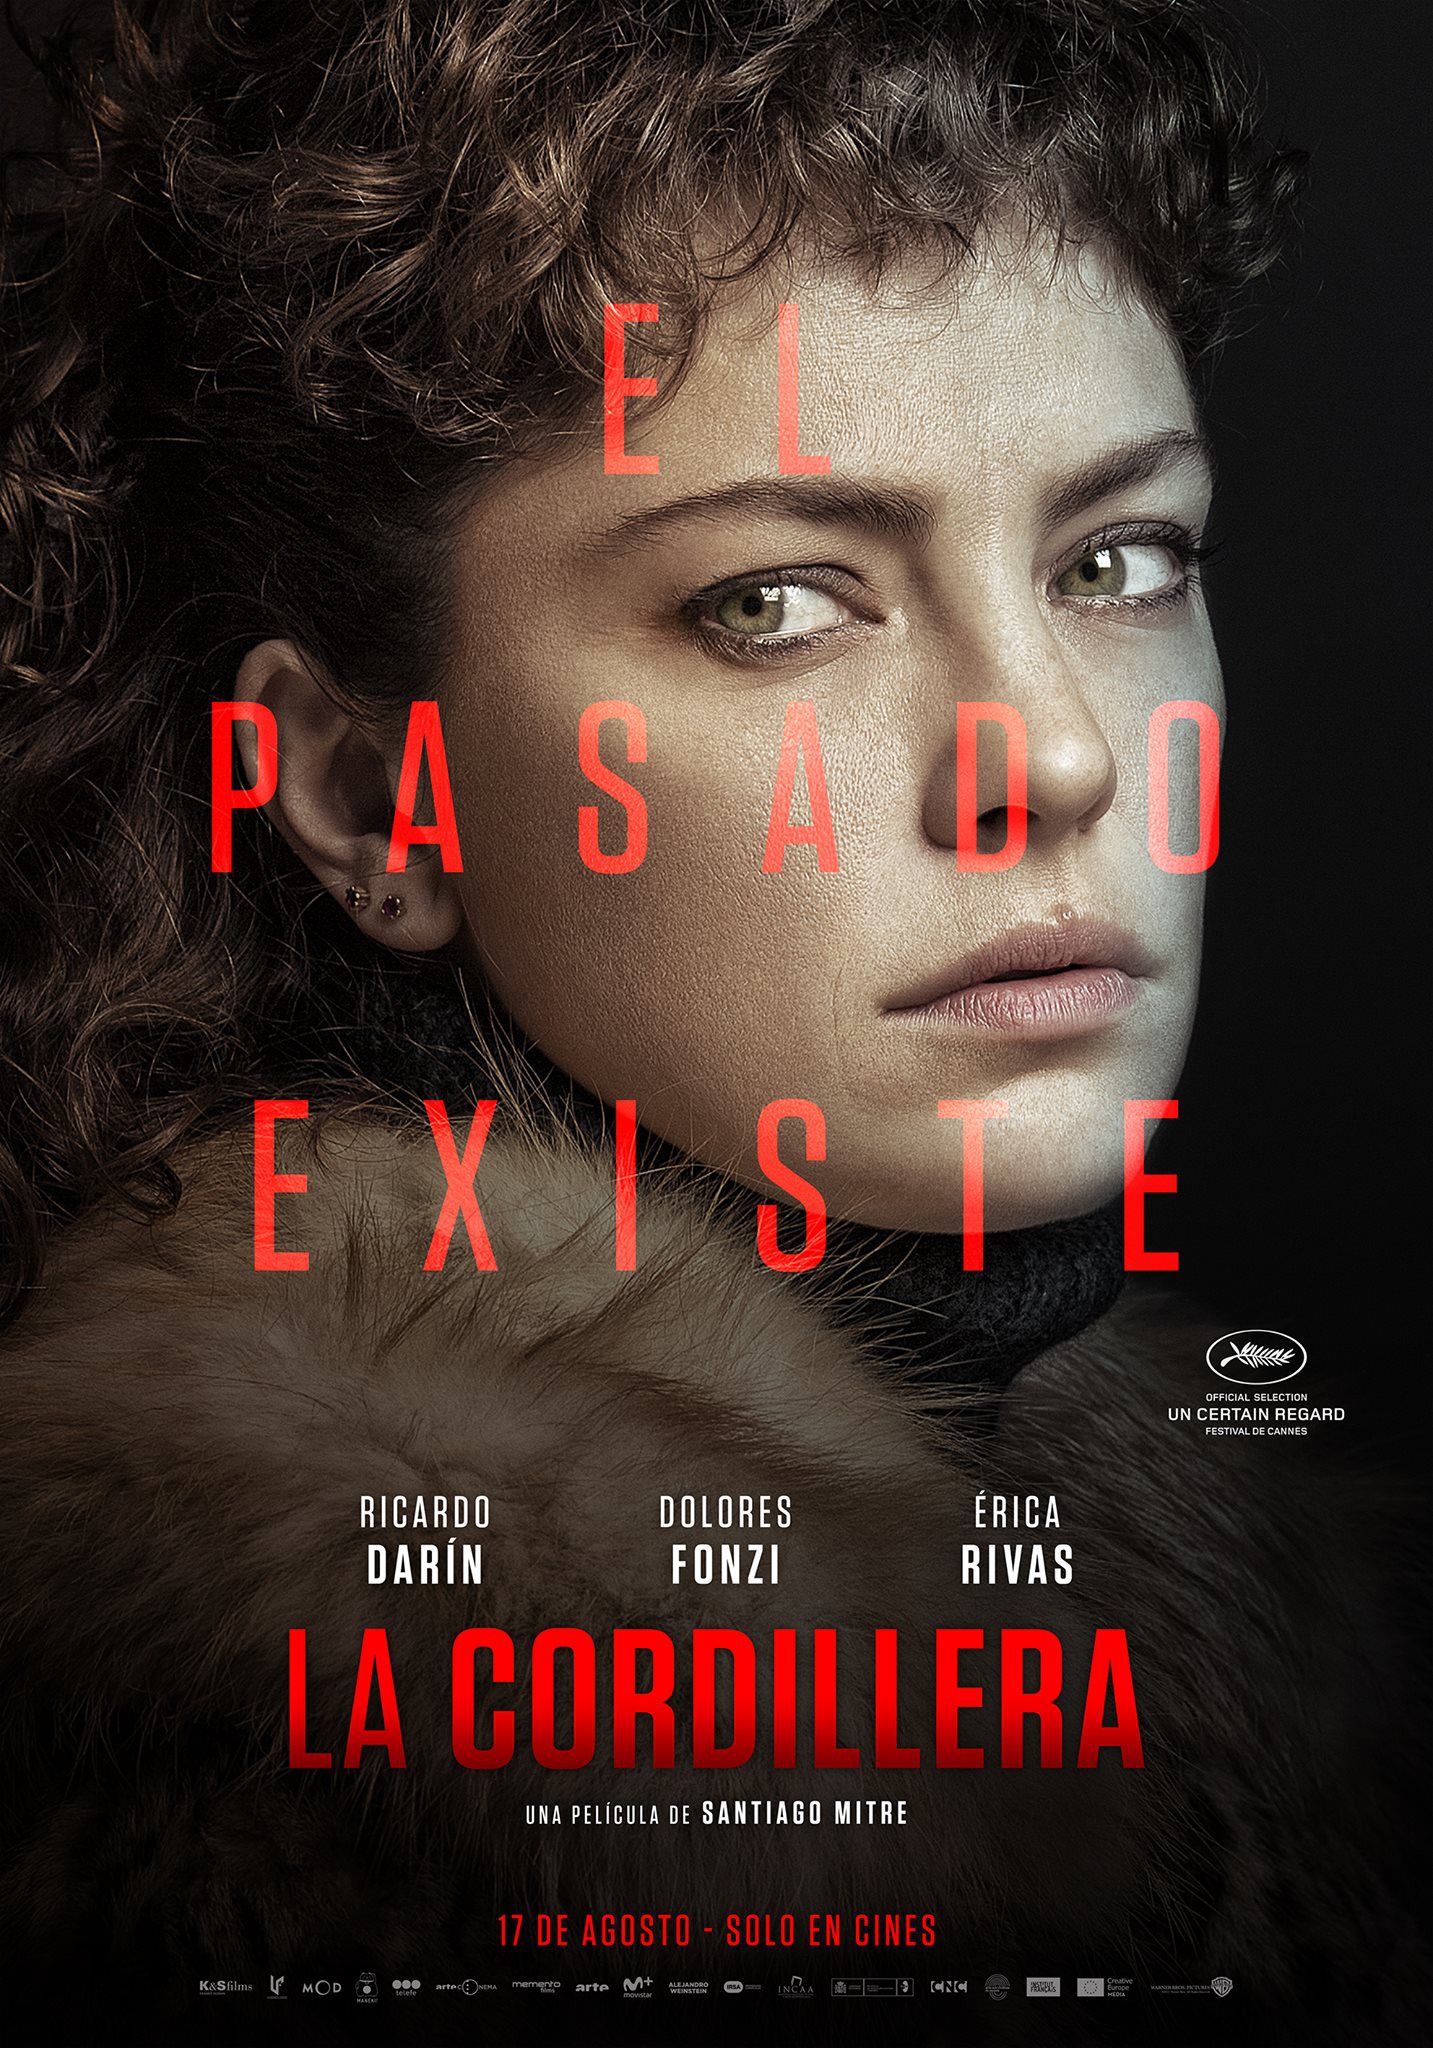 Mega Sized Movie Poster Image for La cordillera (#4 of 5)